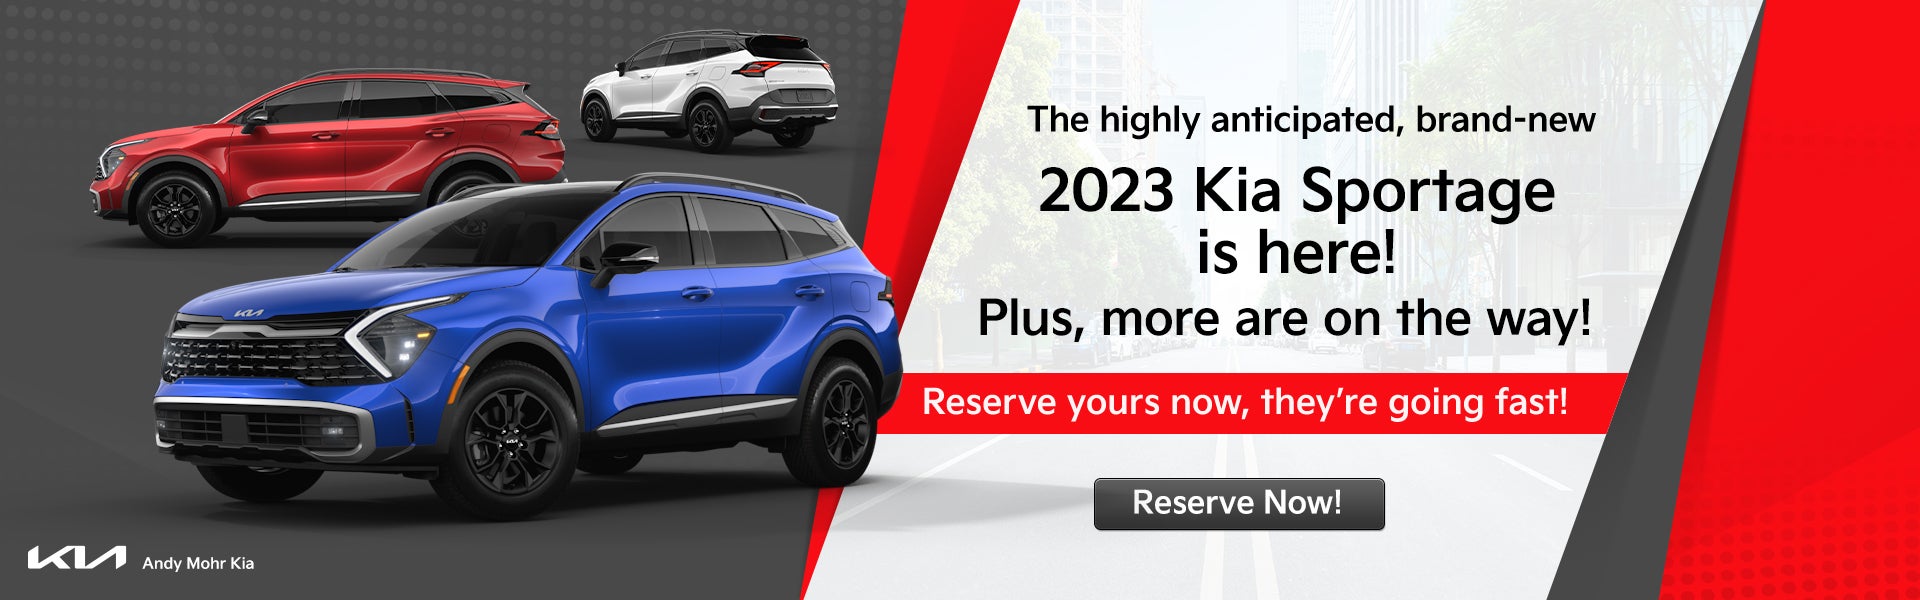 2023 Kia Sportage Reserve Now